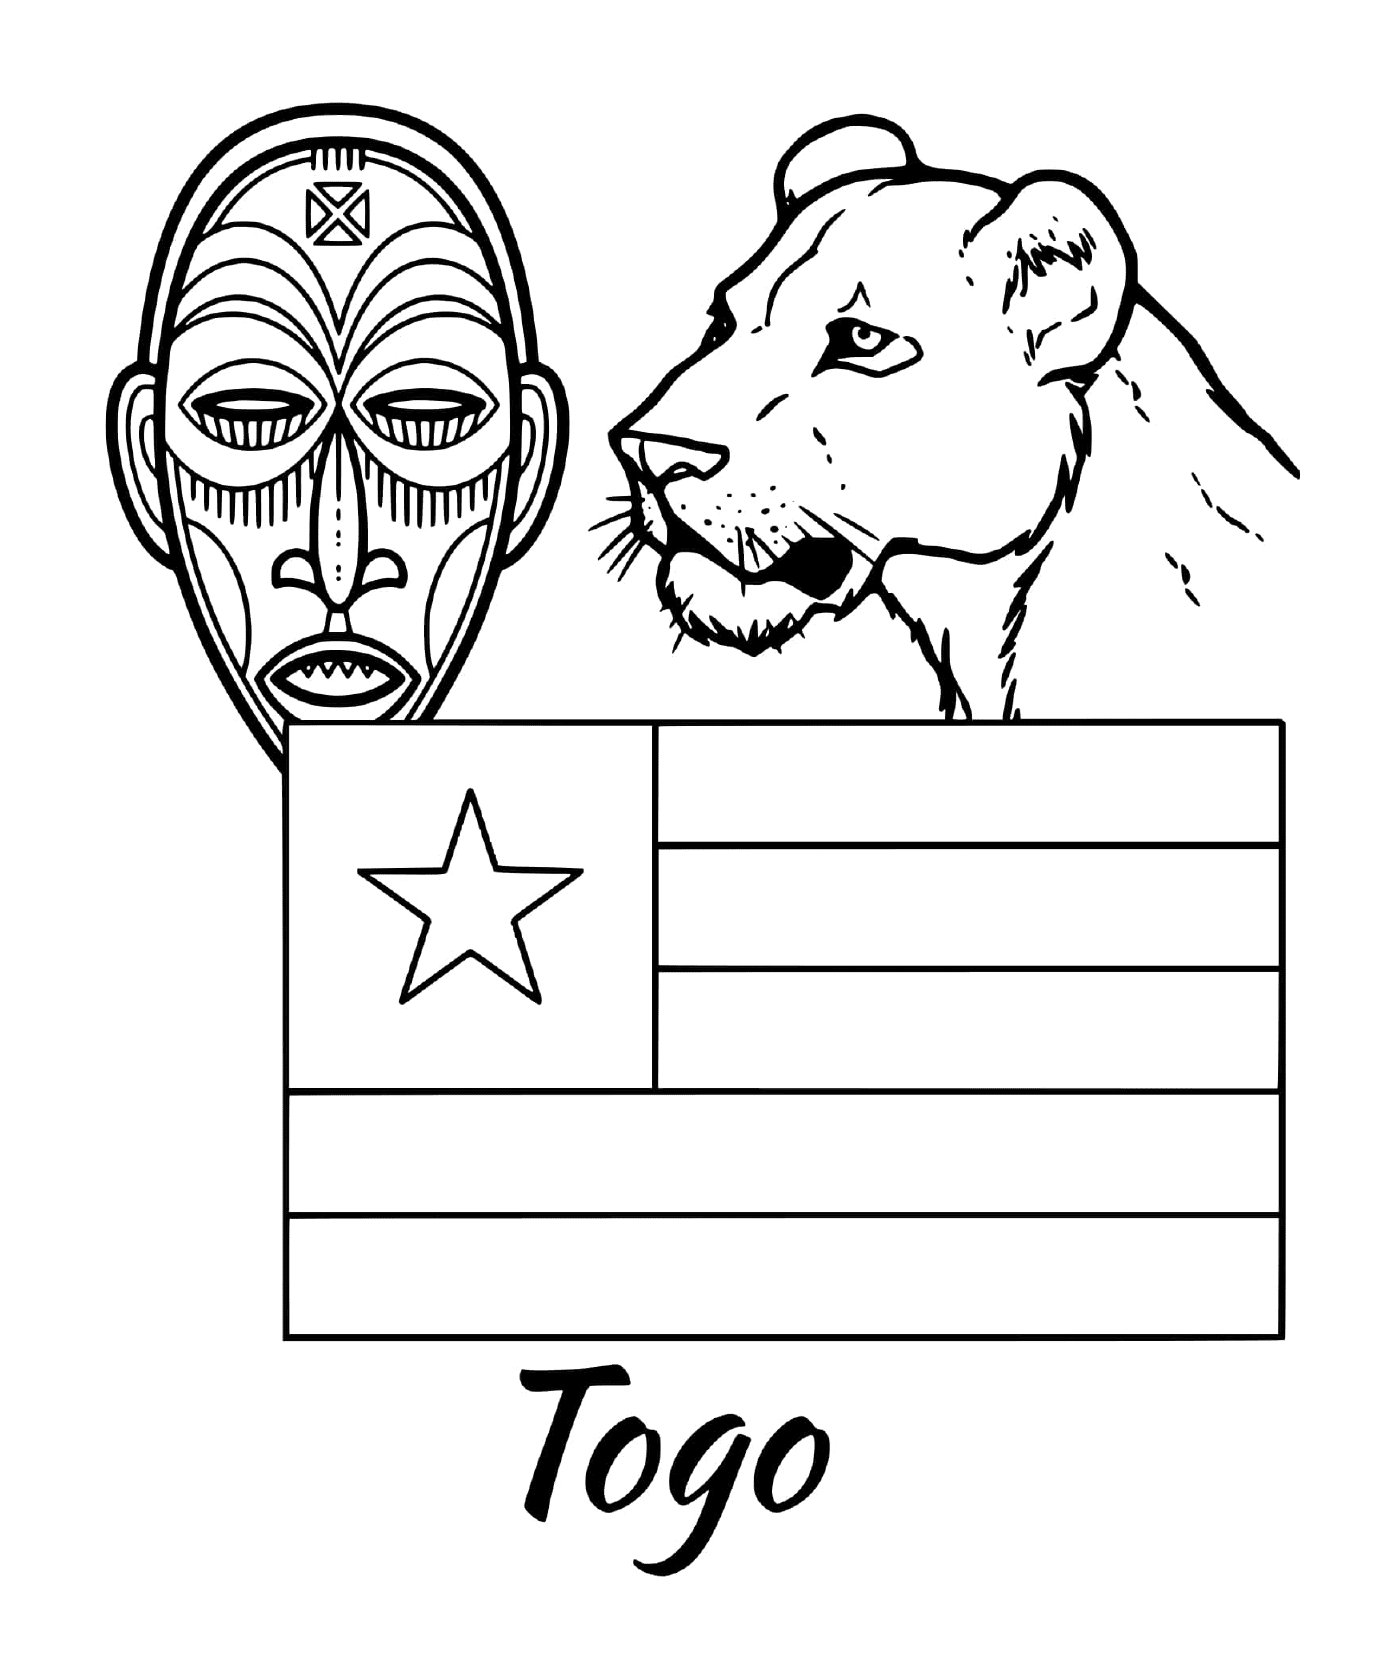  Togo-Flagge mit Stammesmaske 